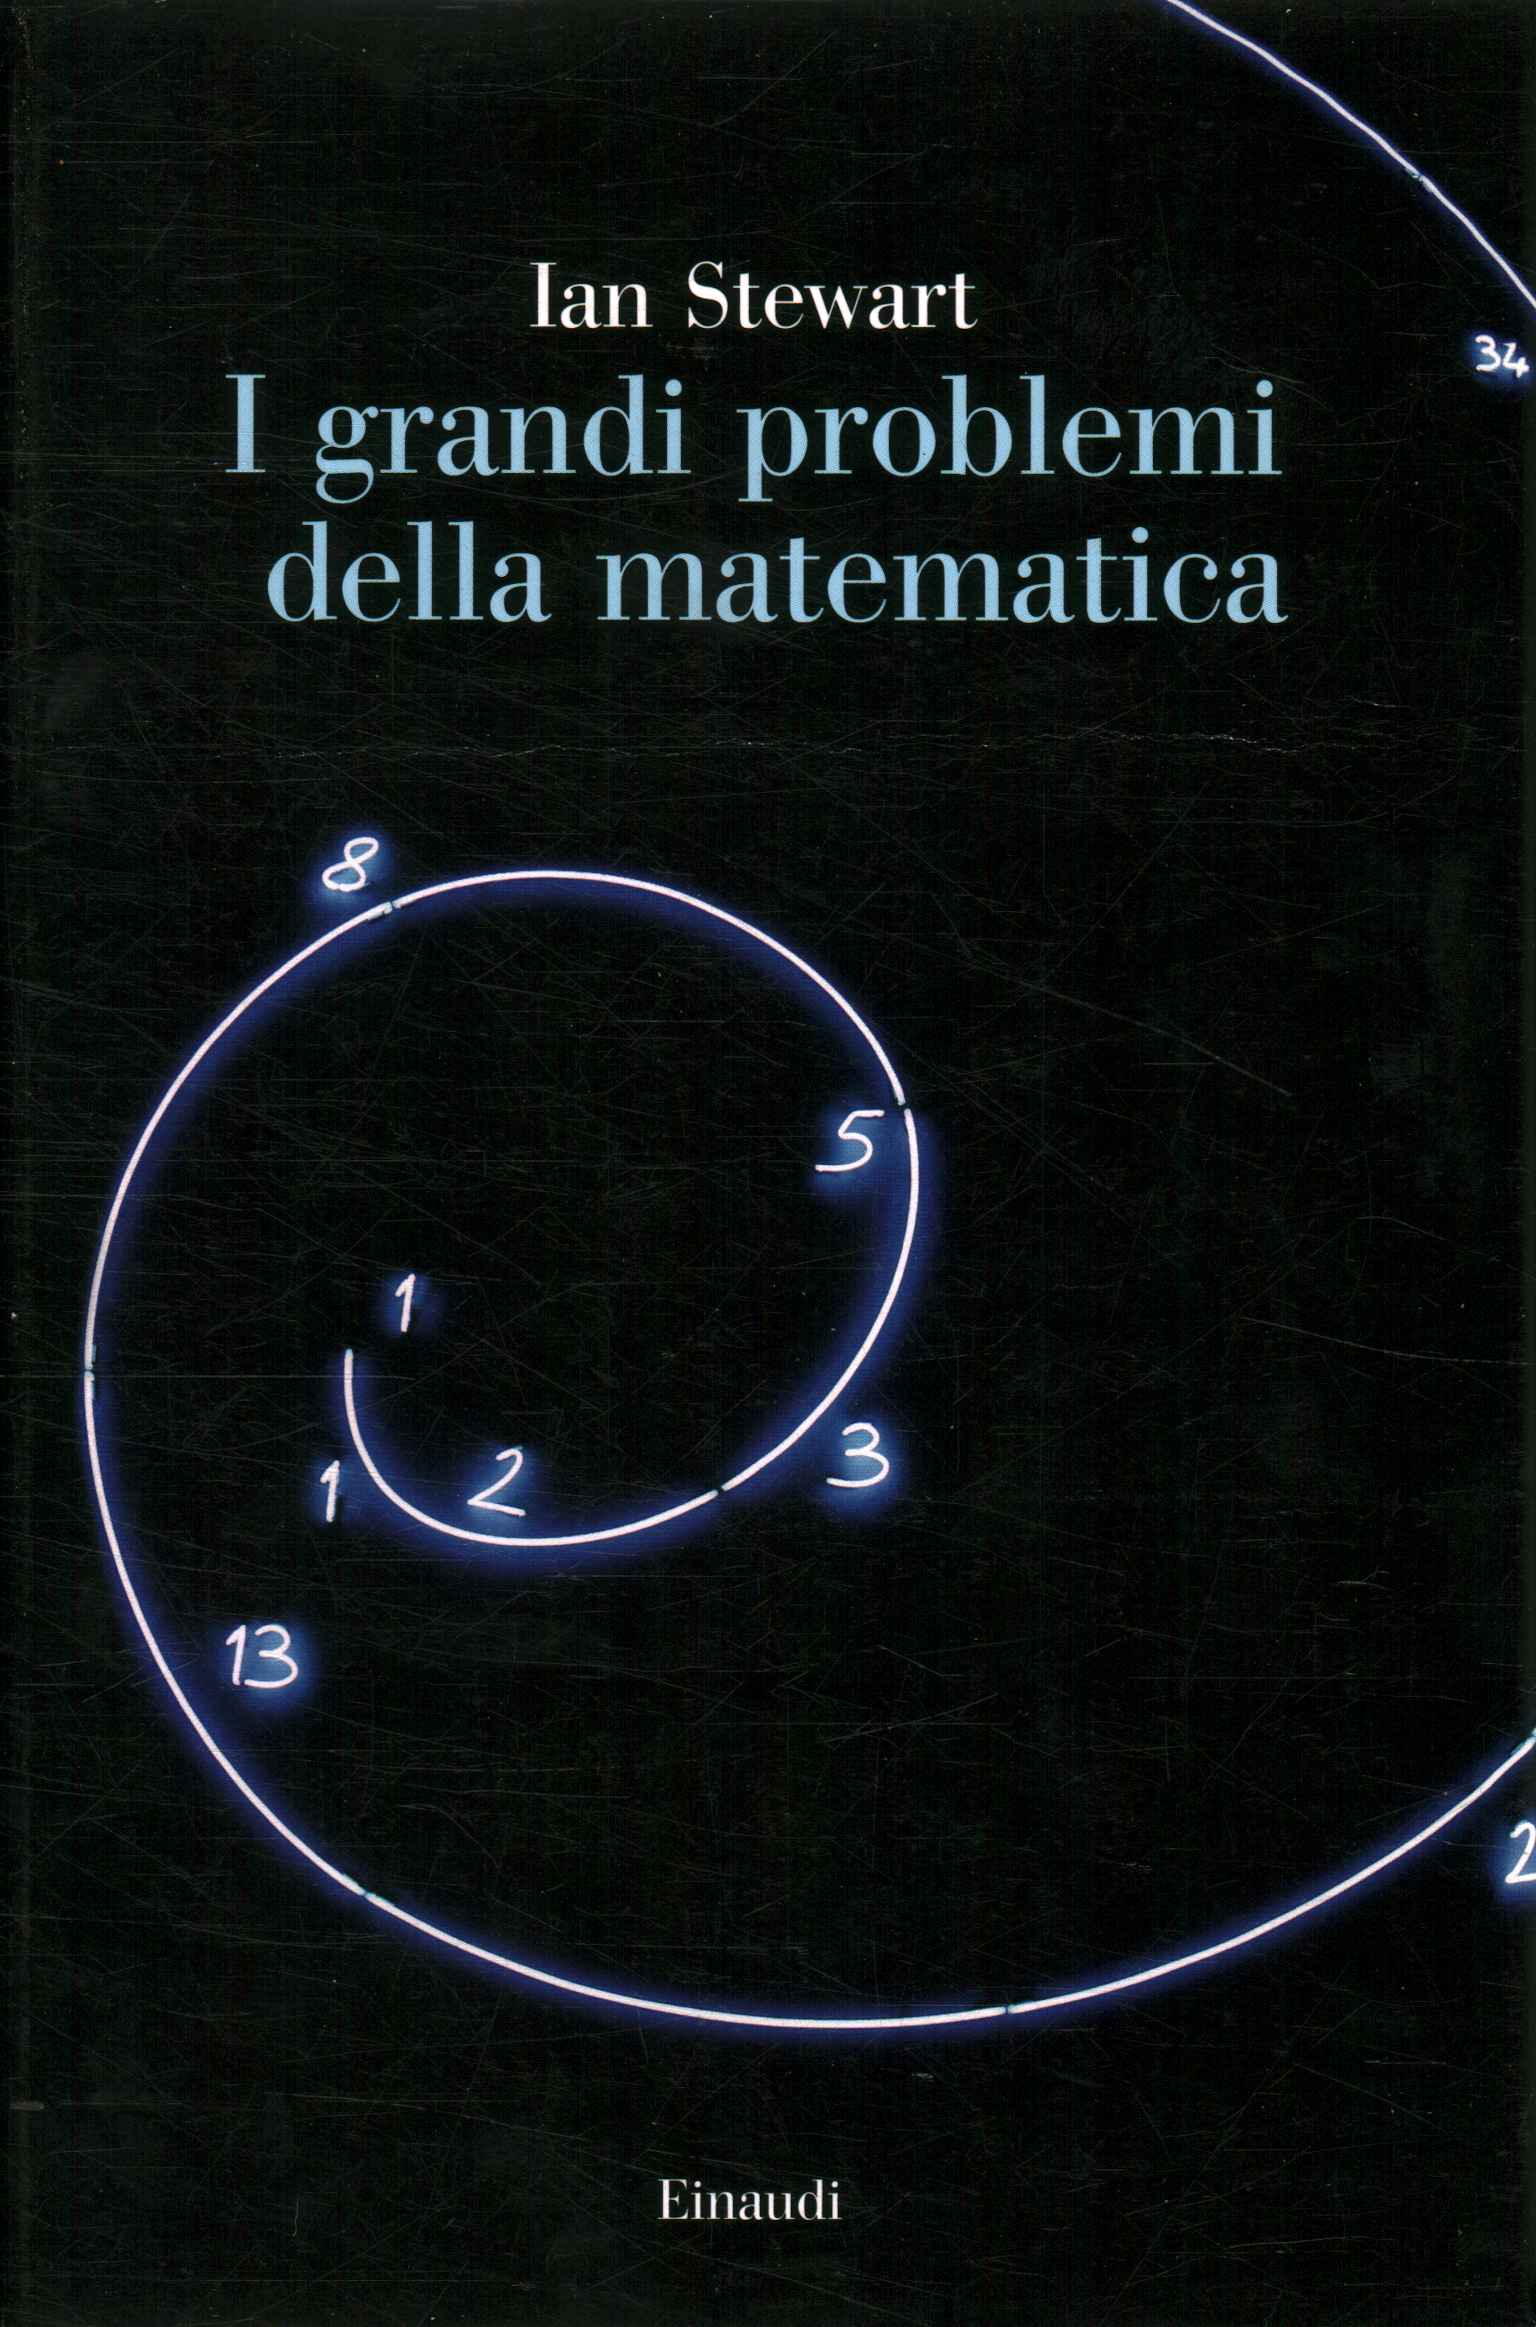 Die großen Probleme der Mathematik